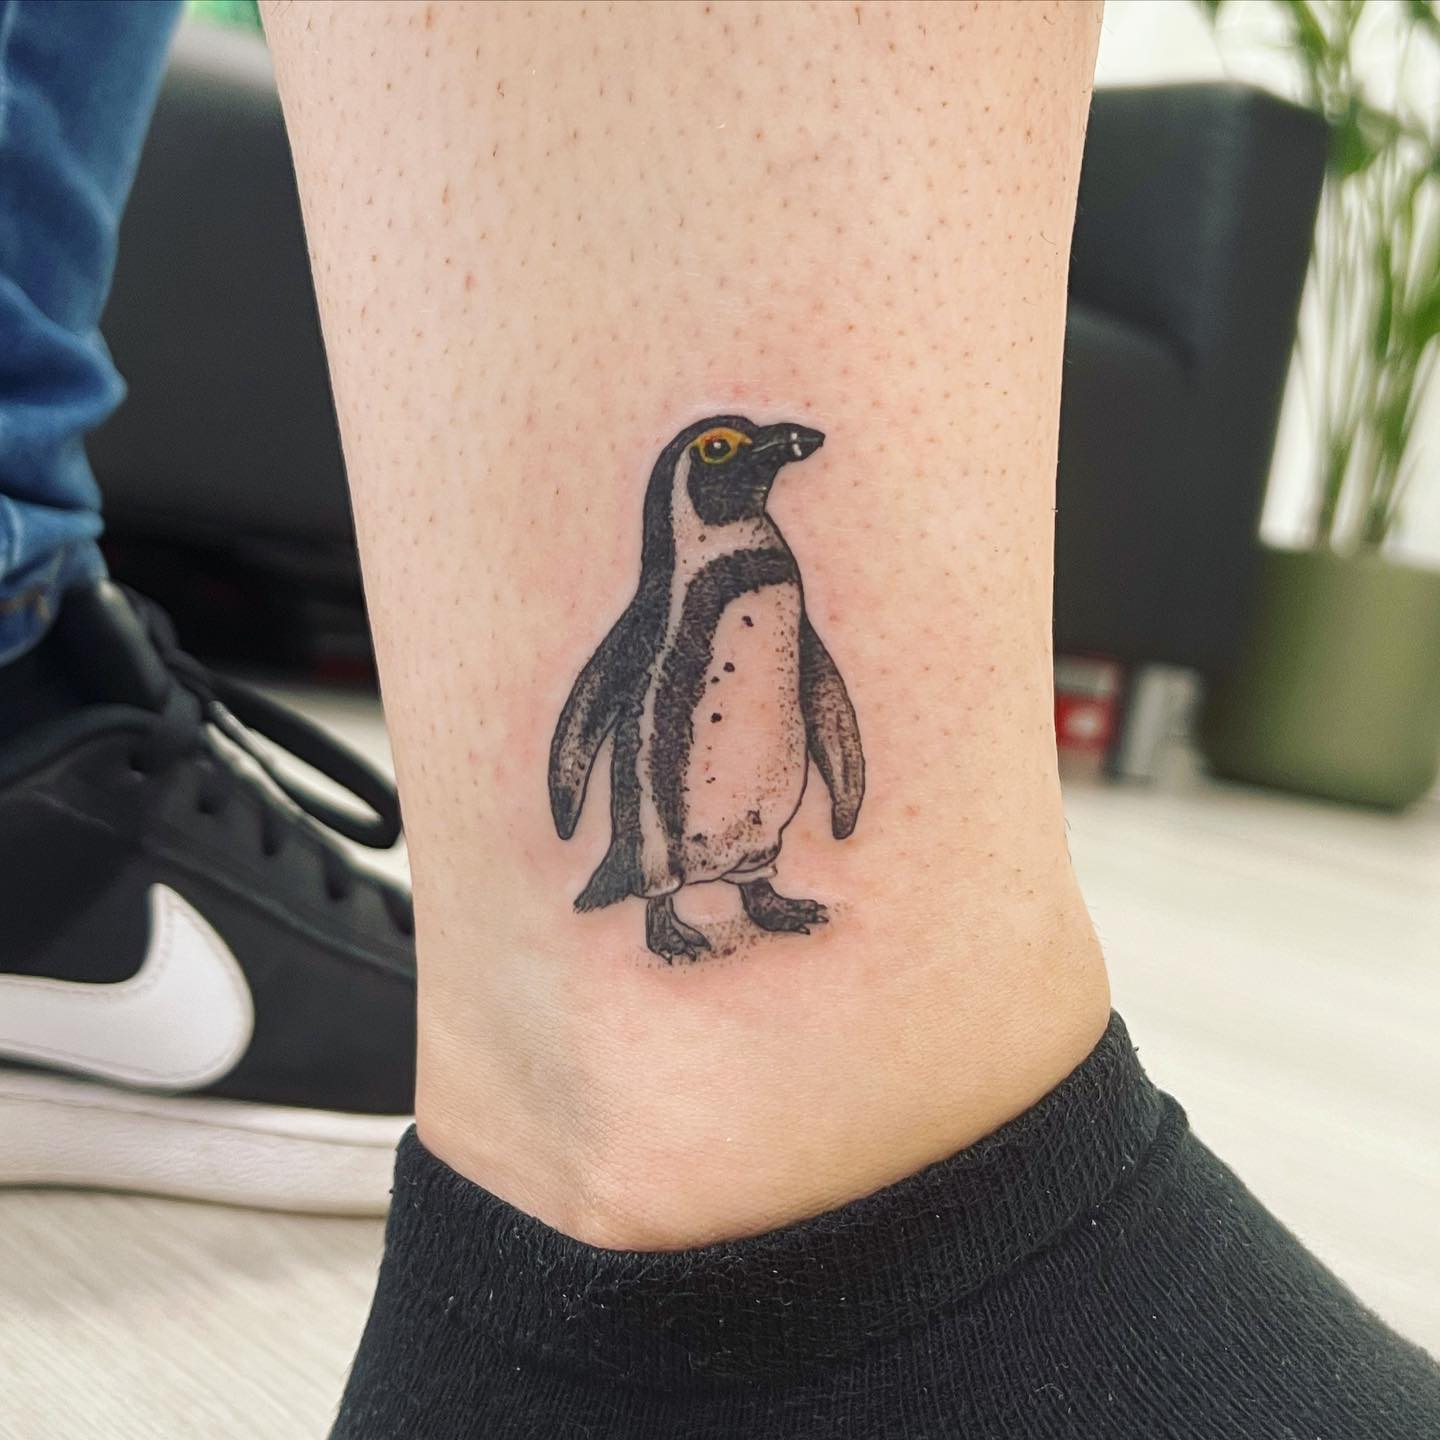 Tatuaje de pingüino en el tobillo